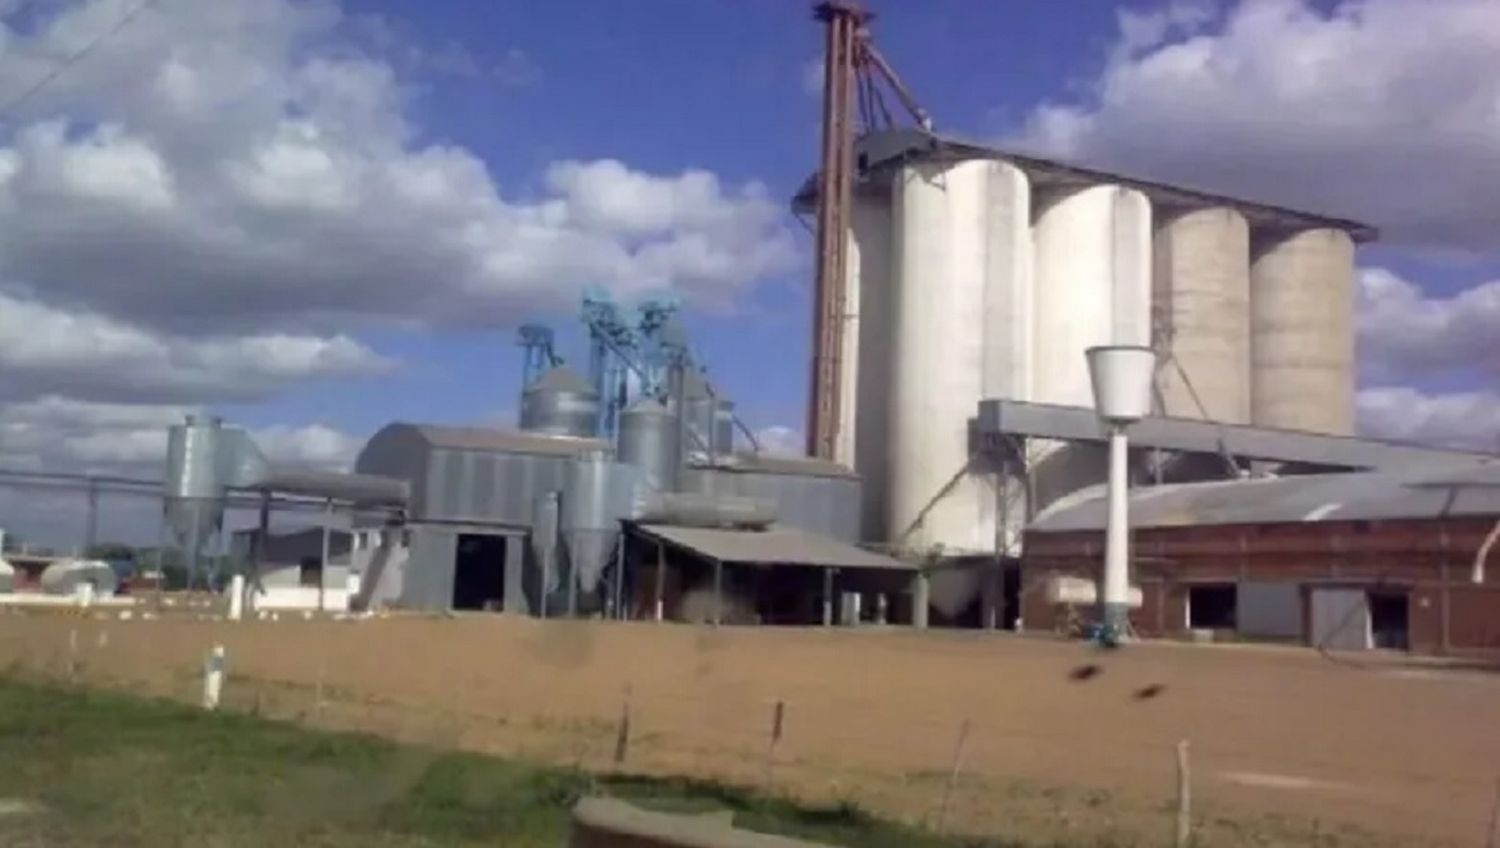 Tragedia en Entre Ríos: murió un trabajador al quedar atrapado en un silo